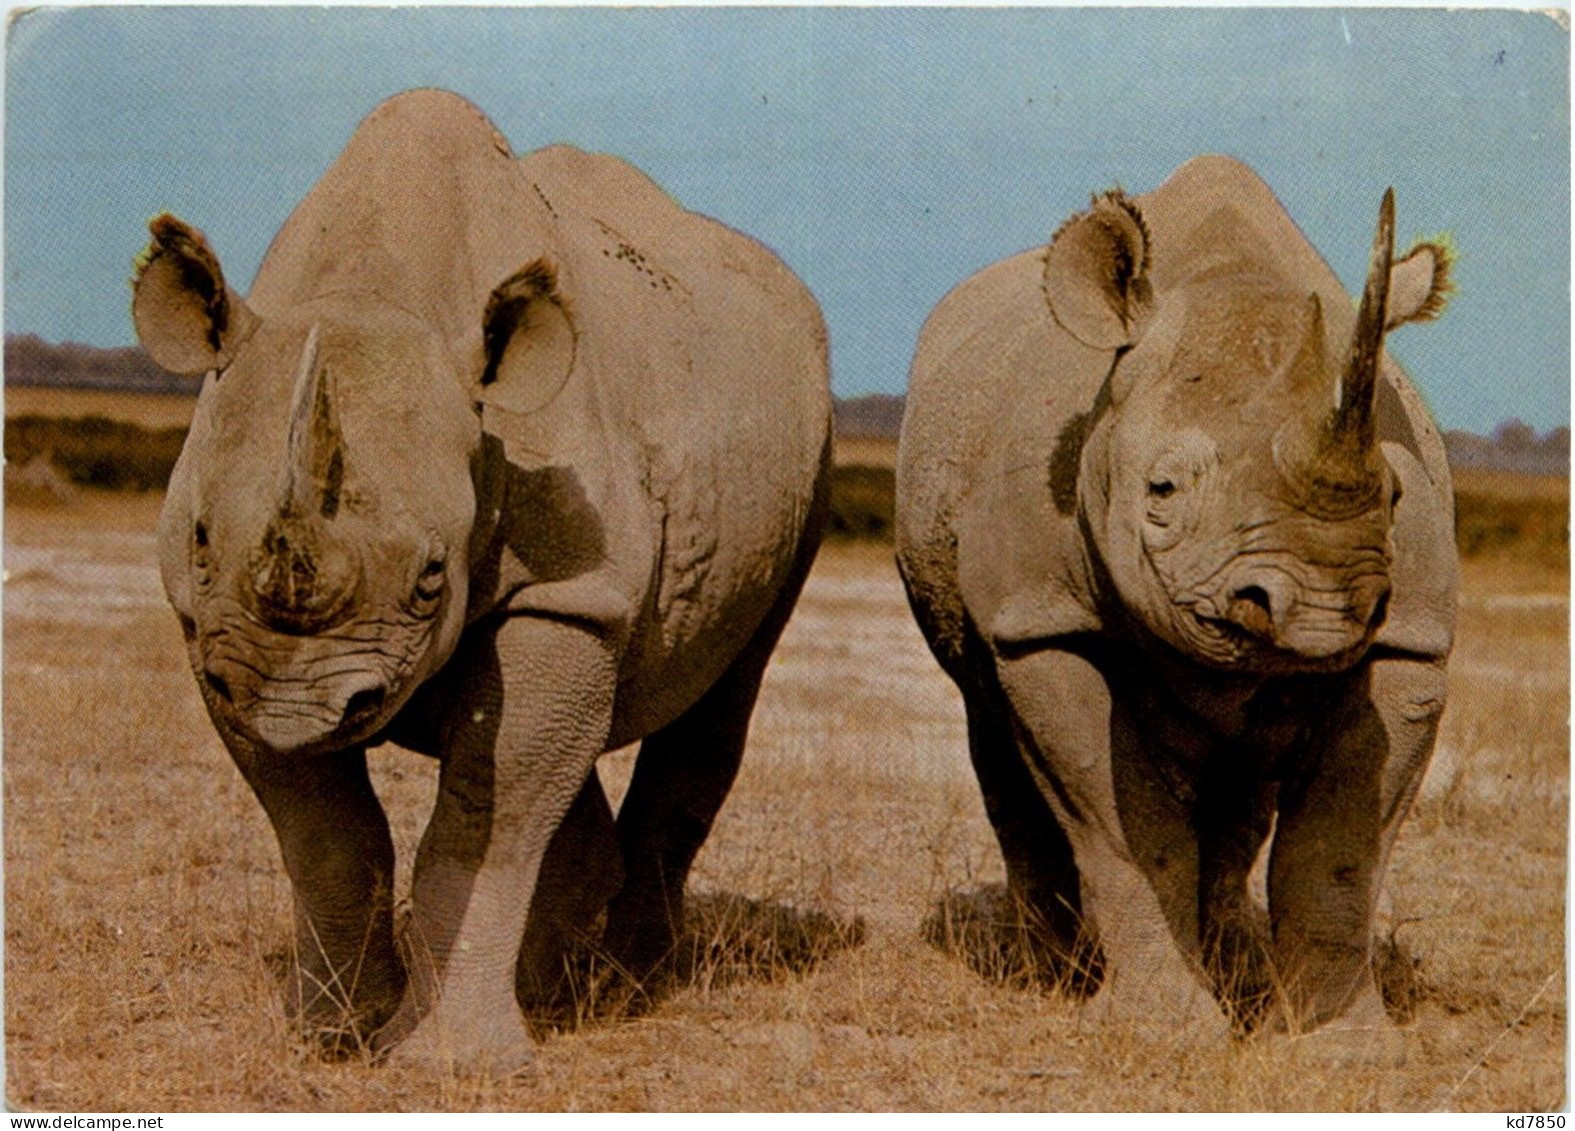 Rhino - Rhinoceros